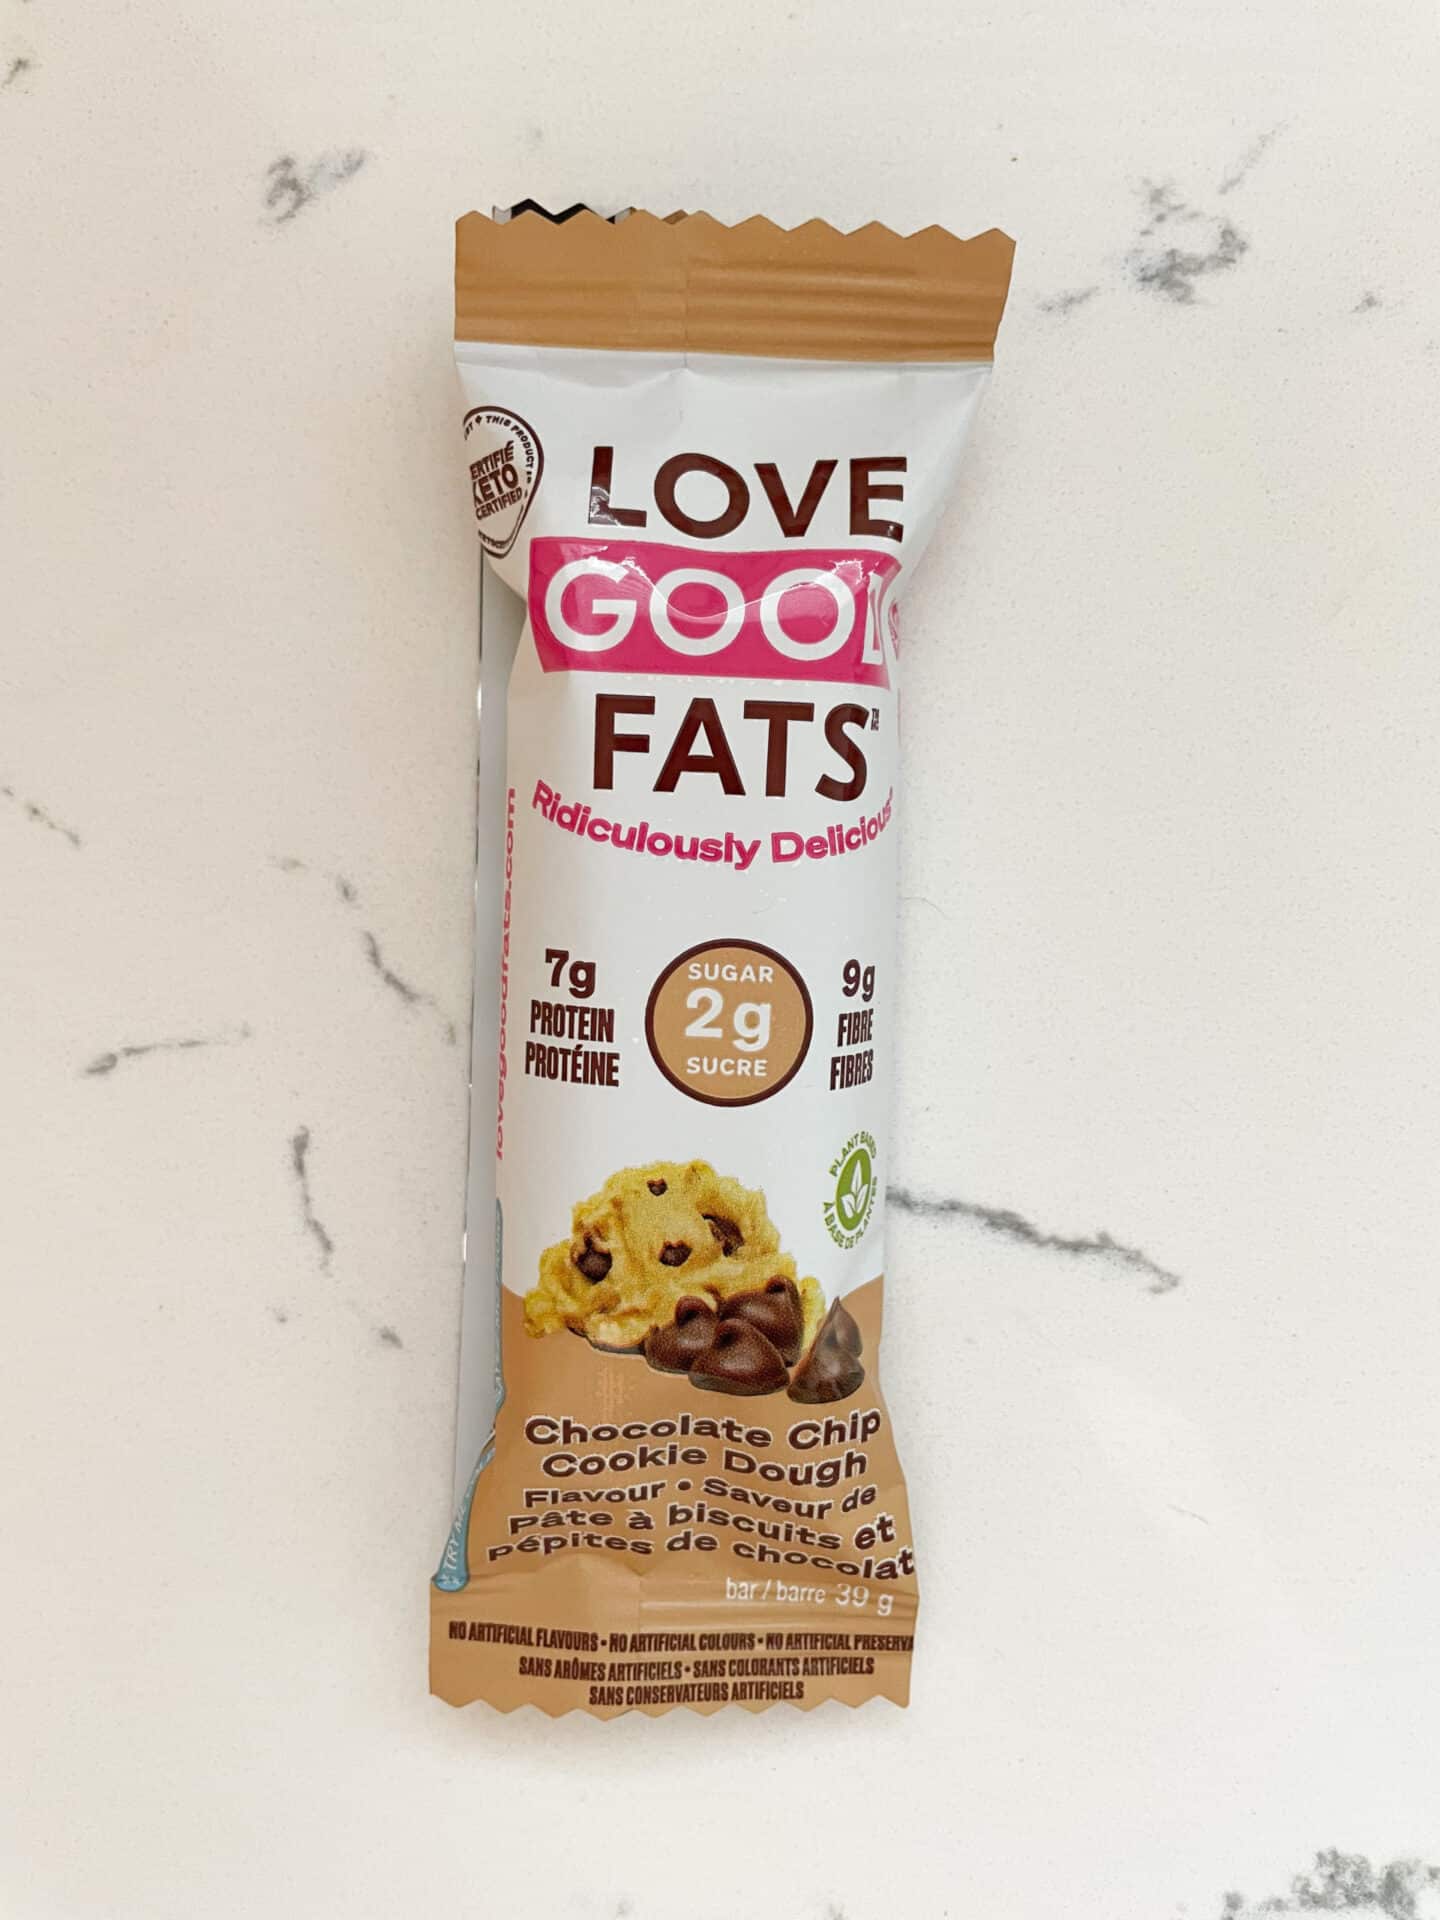 Love Good Fats Bar – Dietitian Review